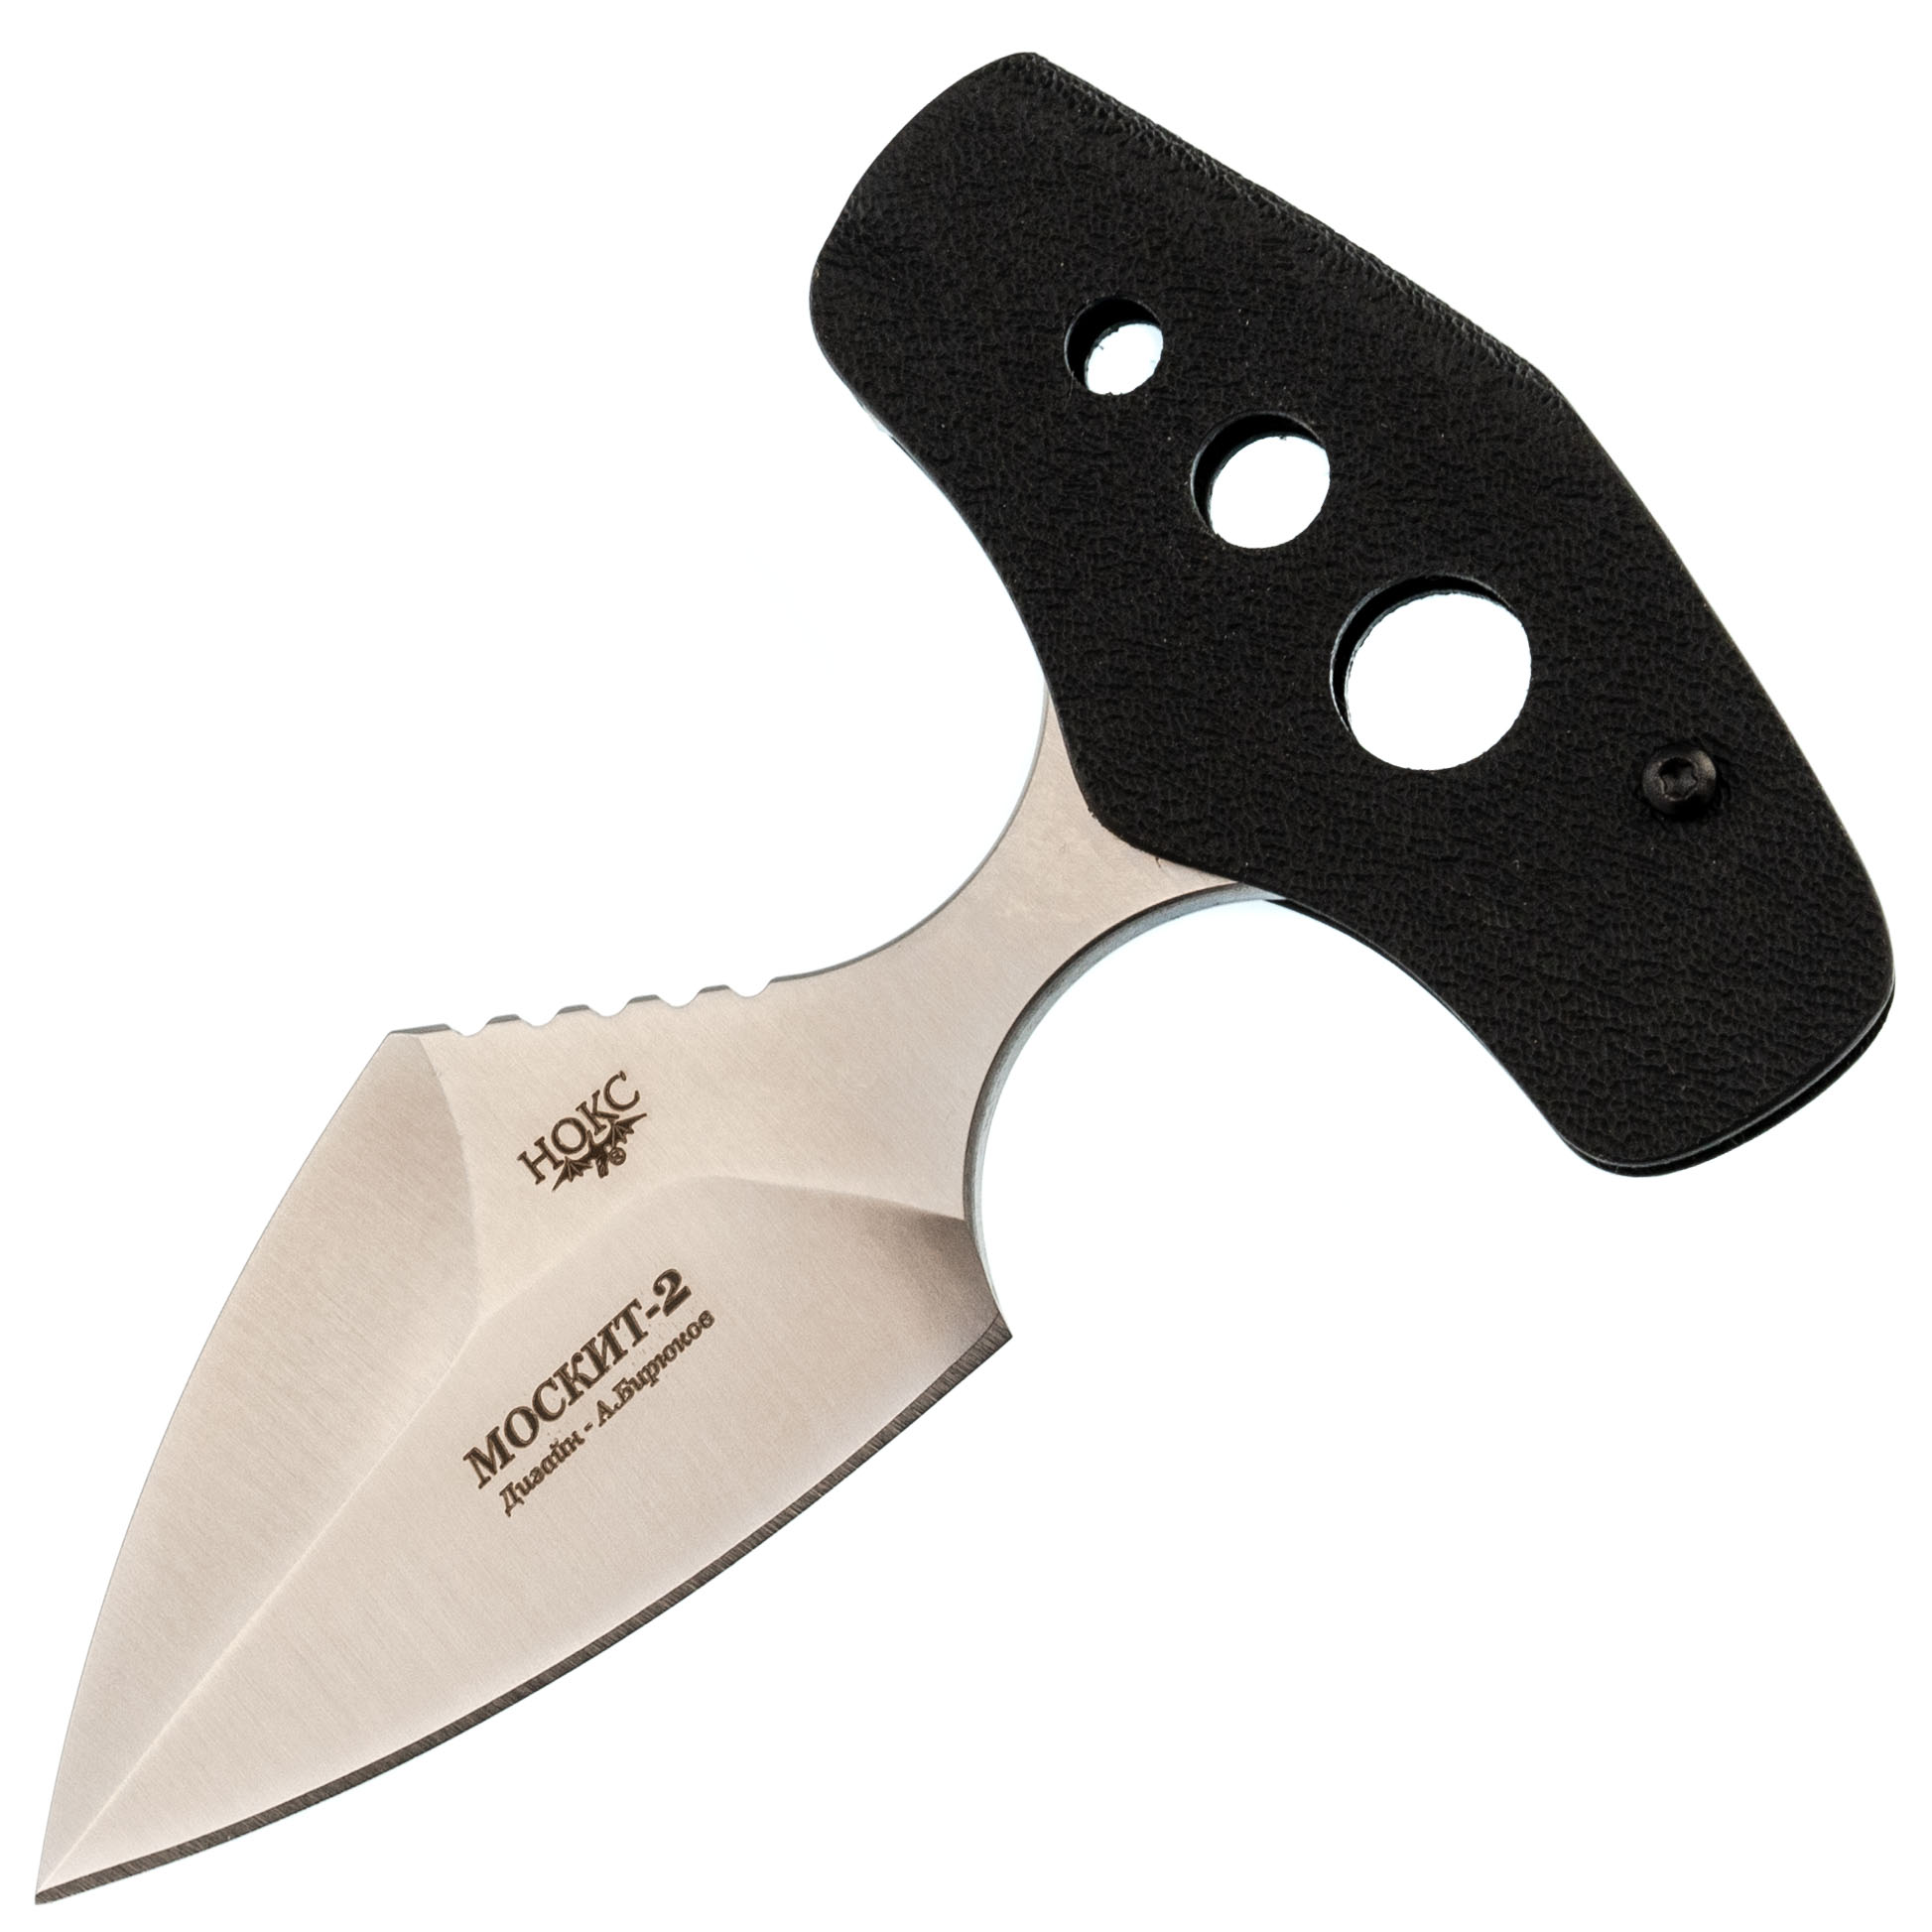 Тычковый нож Москит-2, сталь AUS-8 сувенир деревянный нож тычковый